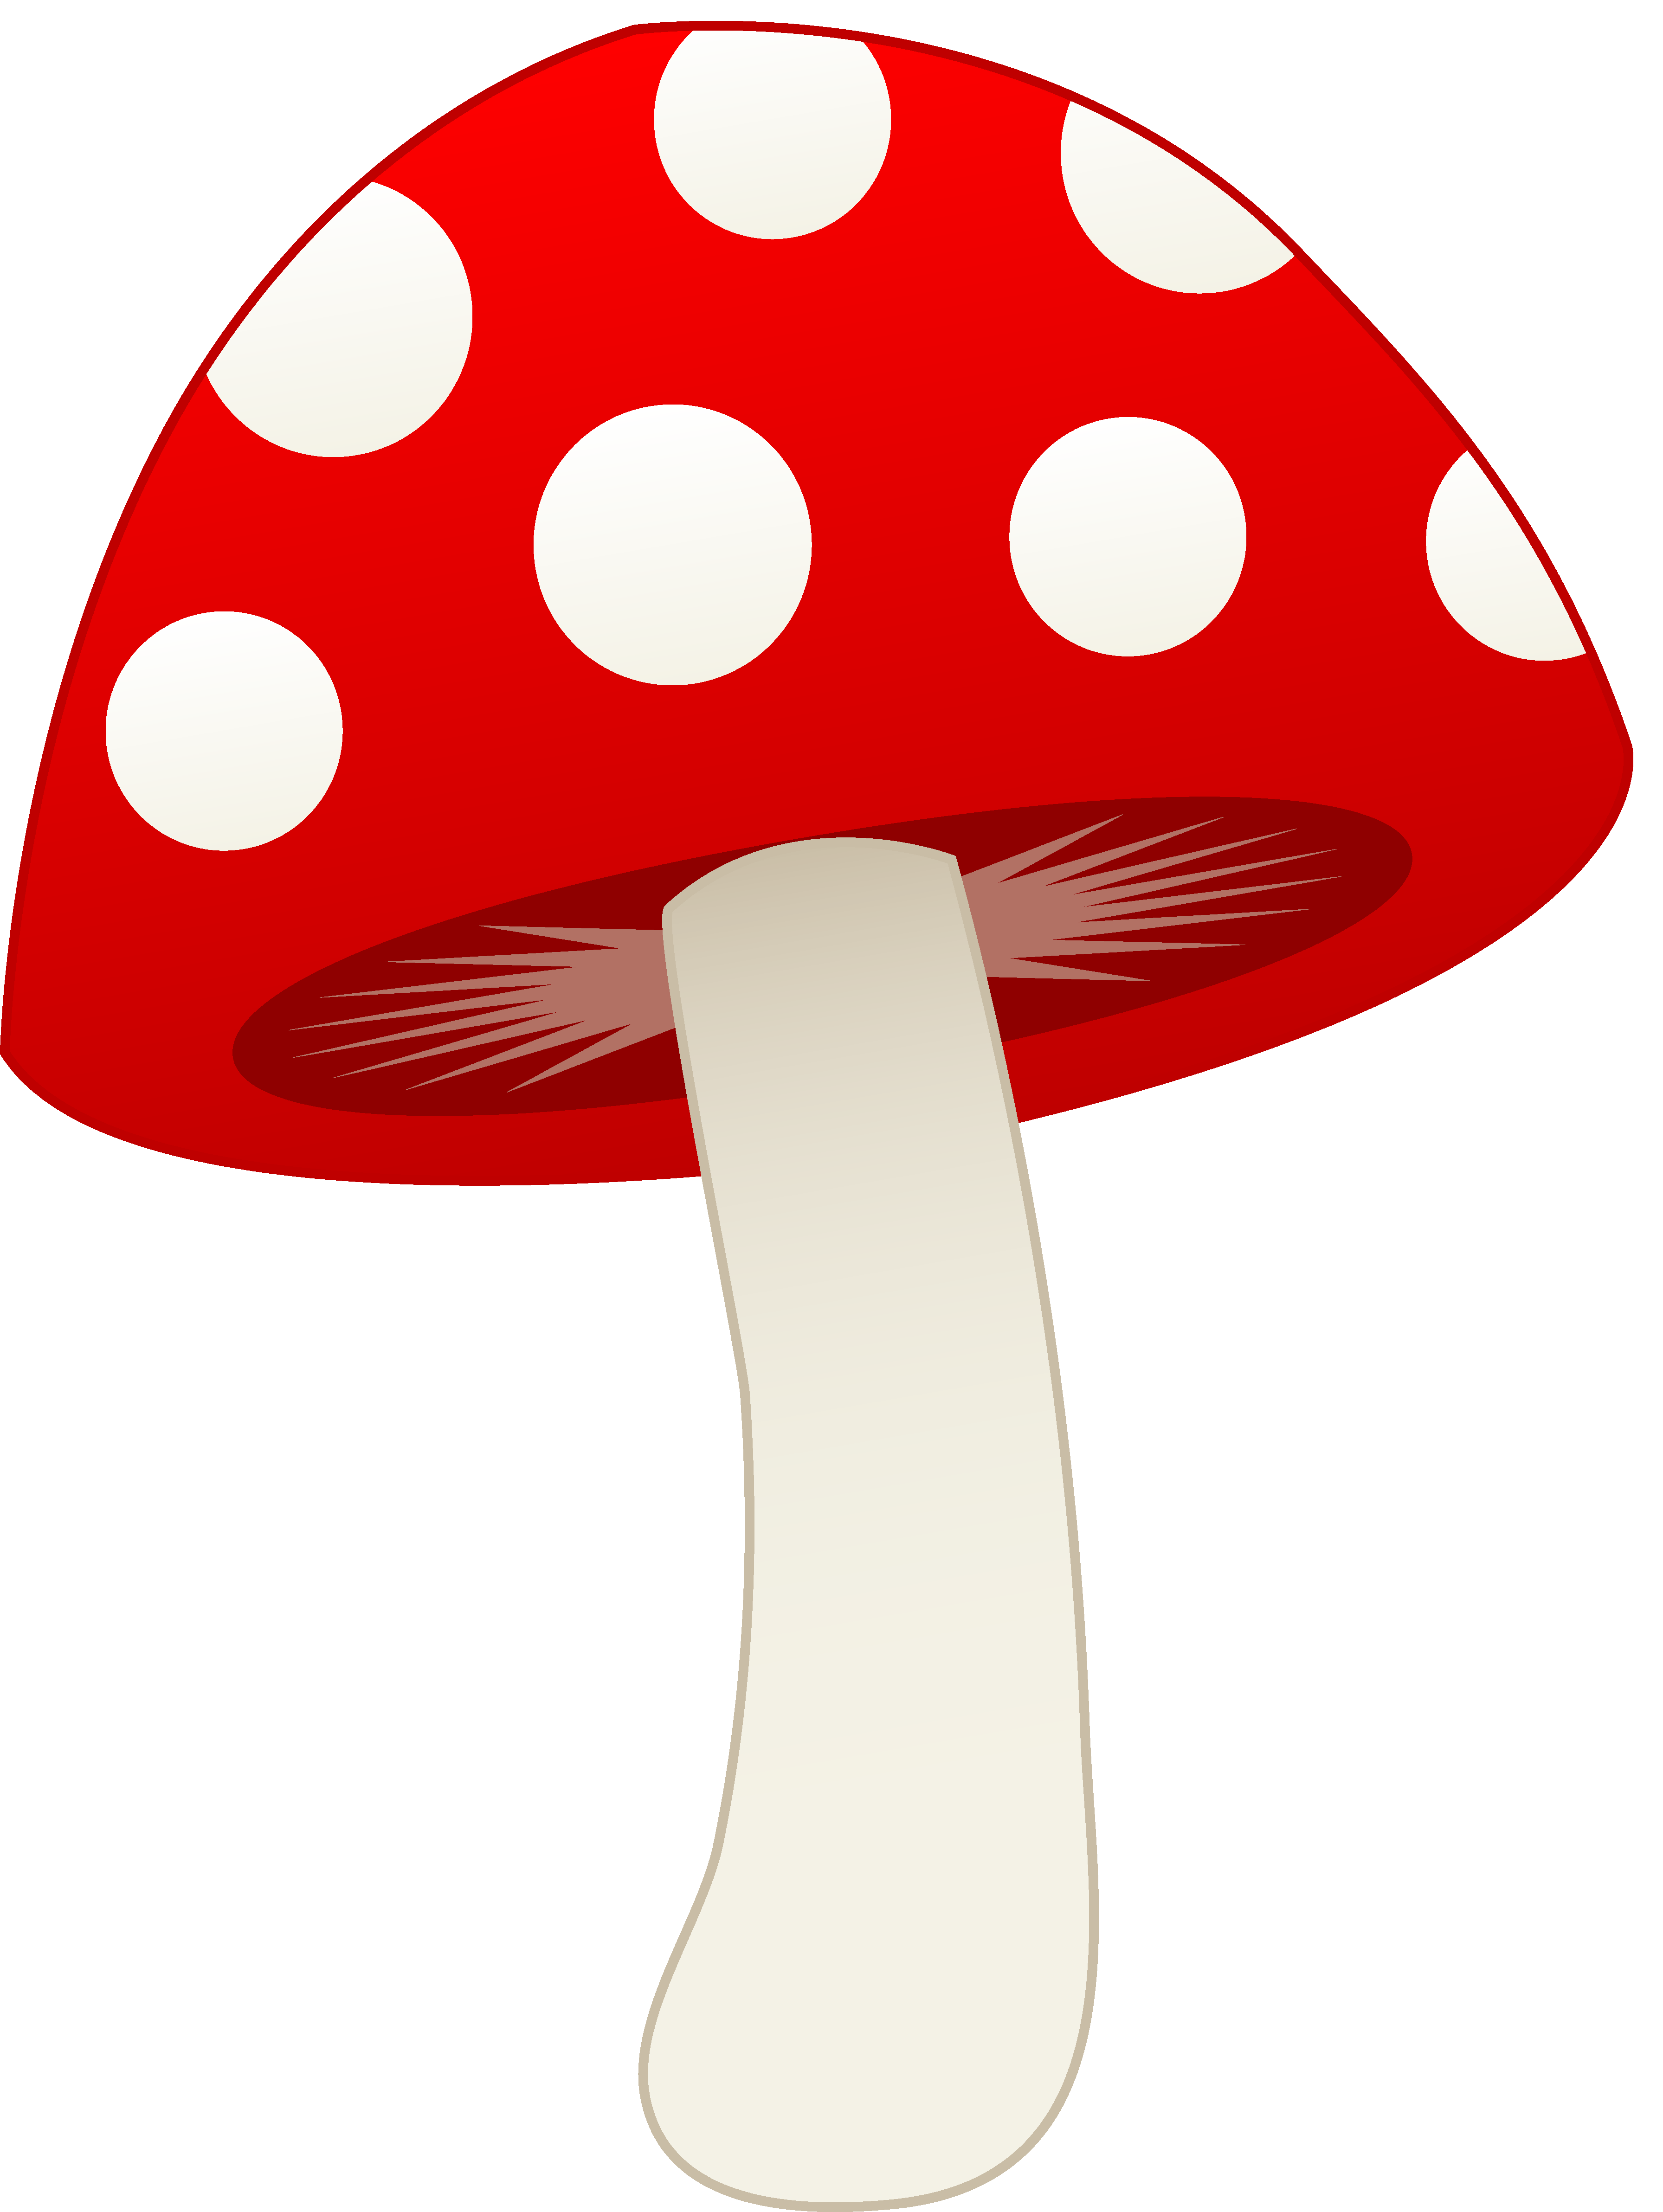 Mushroom Cartoon 